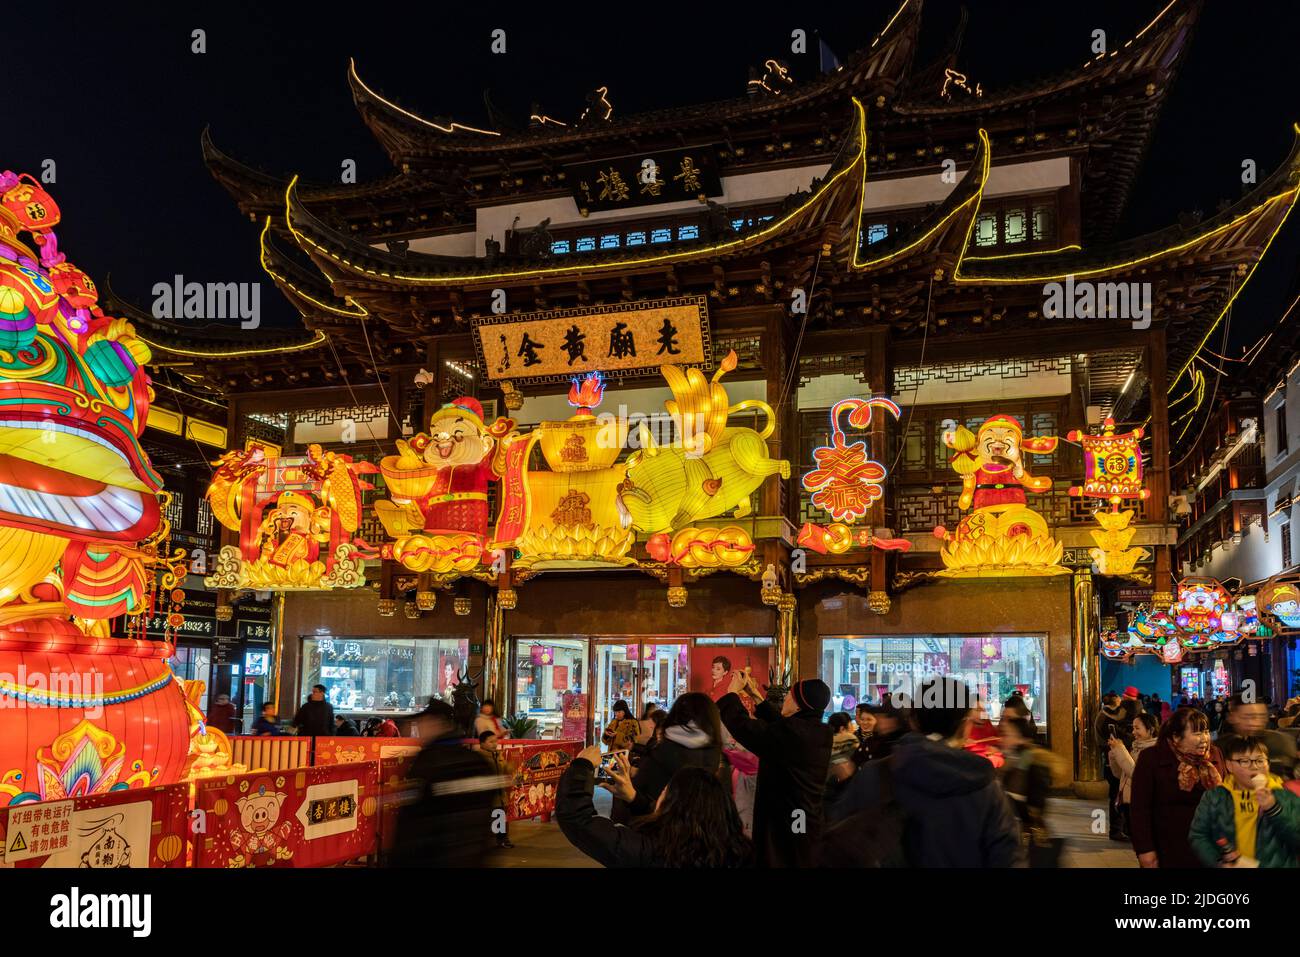 Una folla di turisti a piedi lungo le viuzze di Yu Yuan, Yu Garden, per ammirare l'esposizione di lanterne durante il festival lanterna nell'anno del Pig. Foto Stock